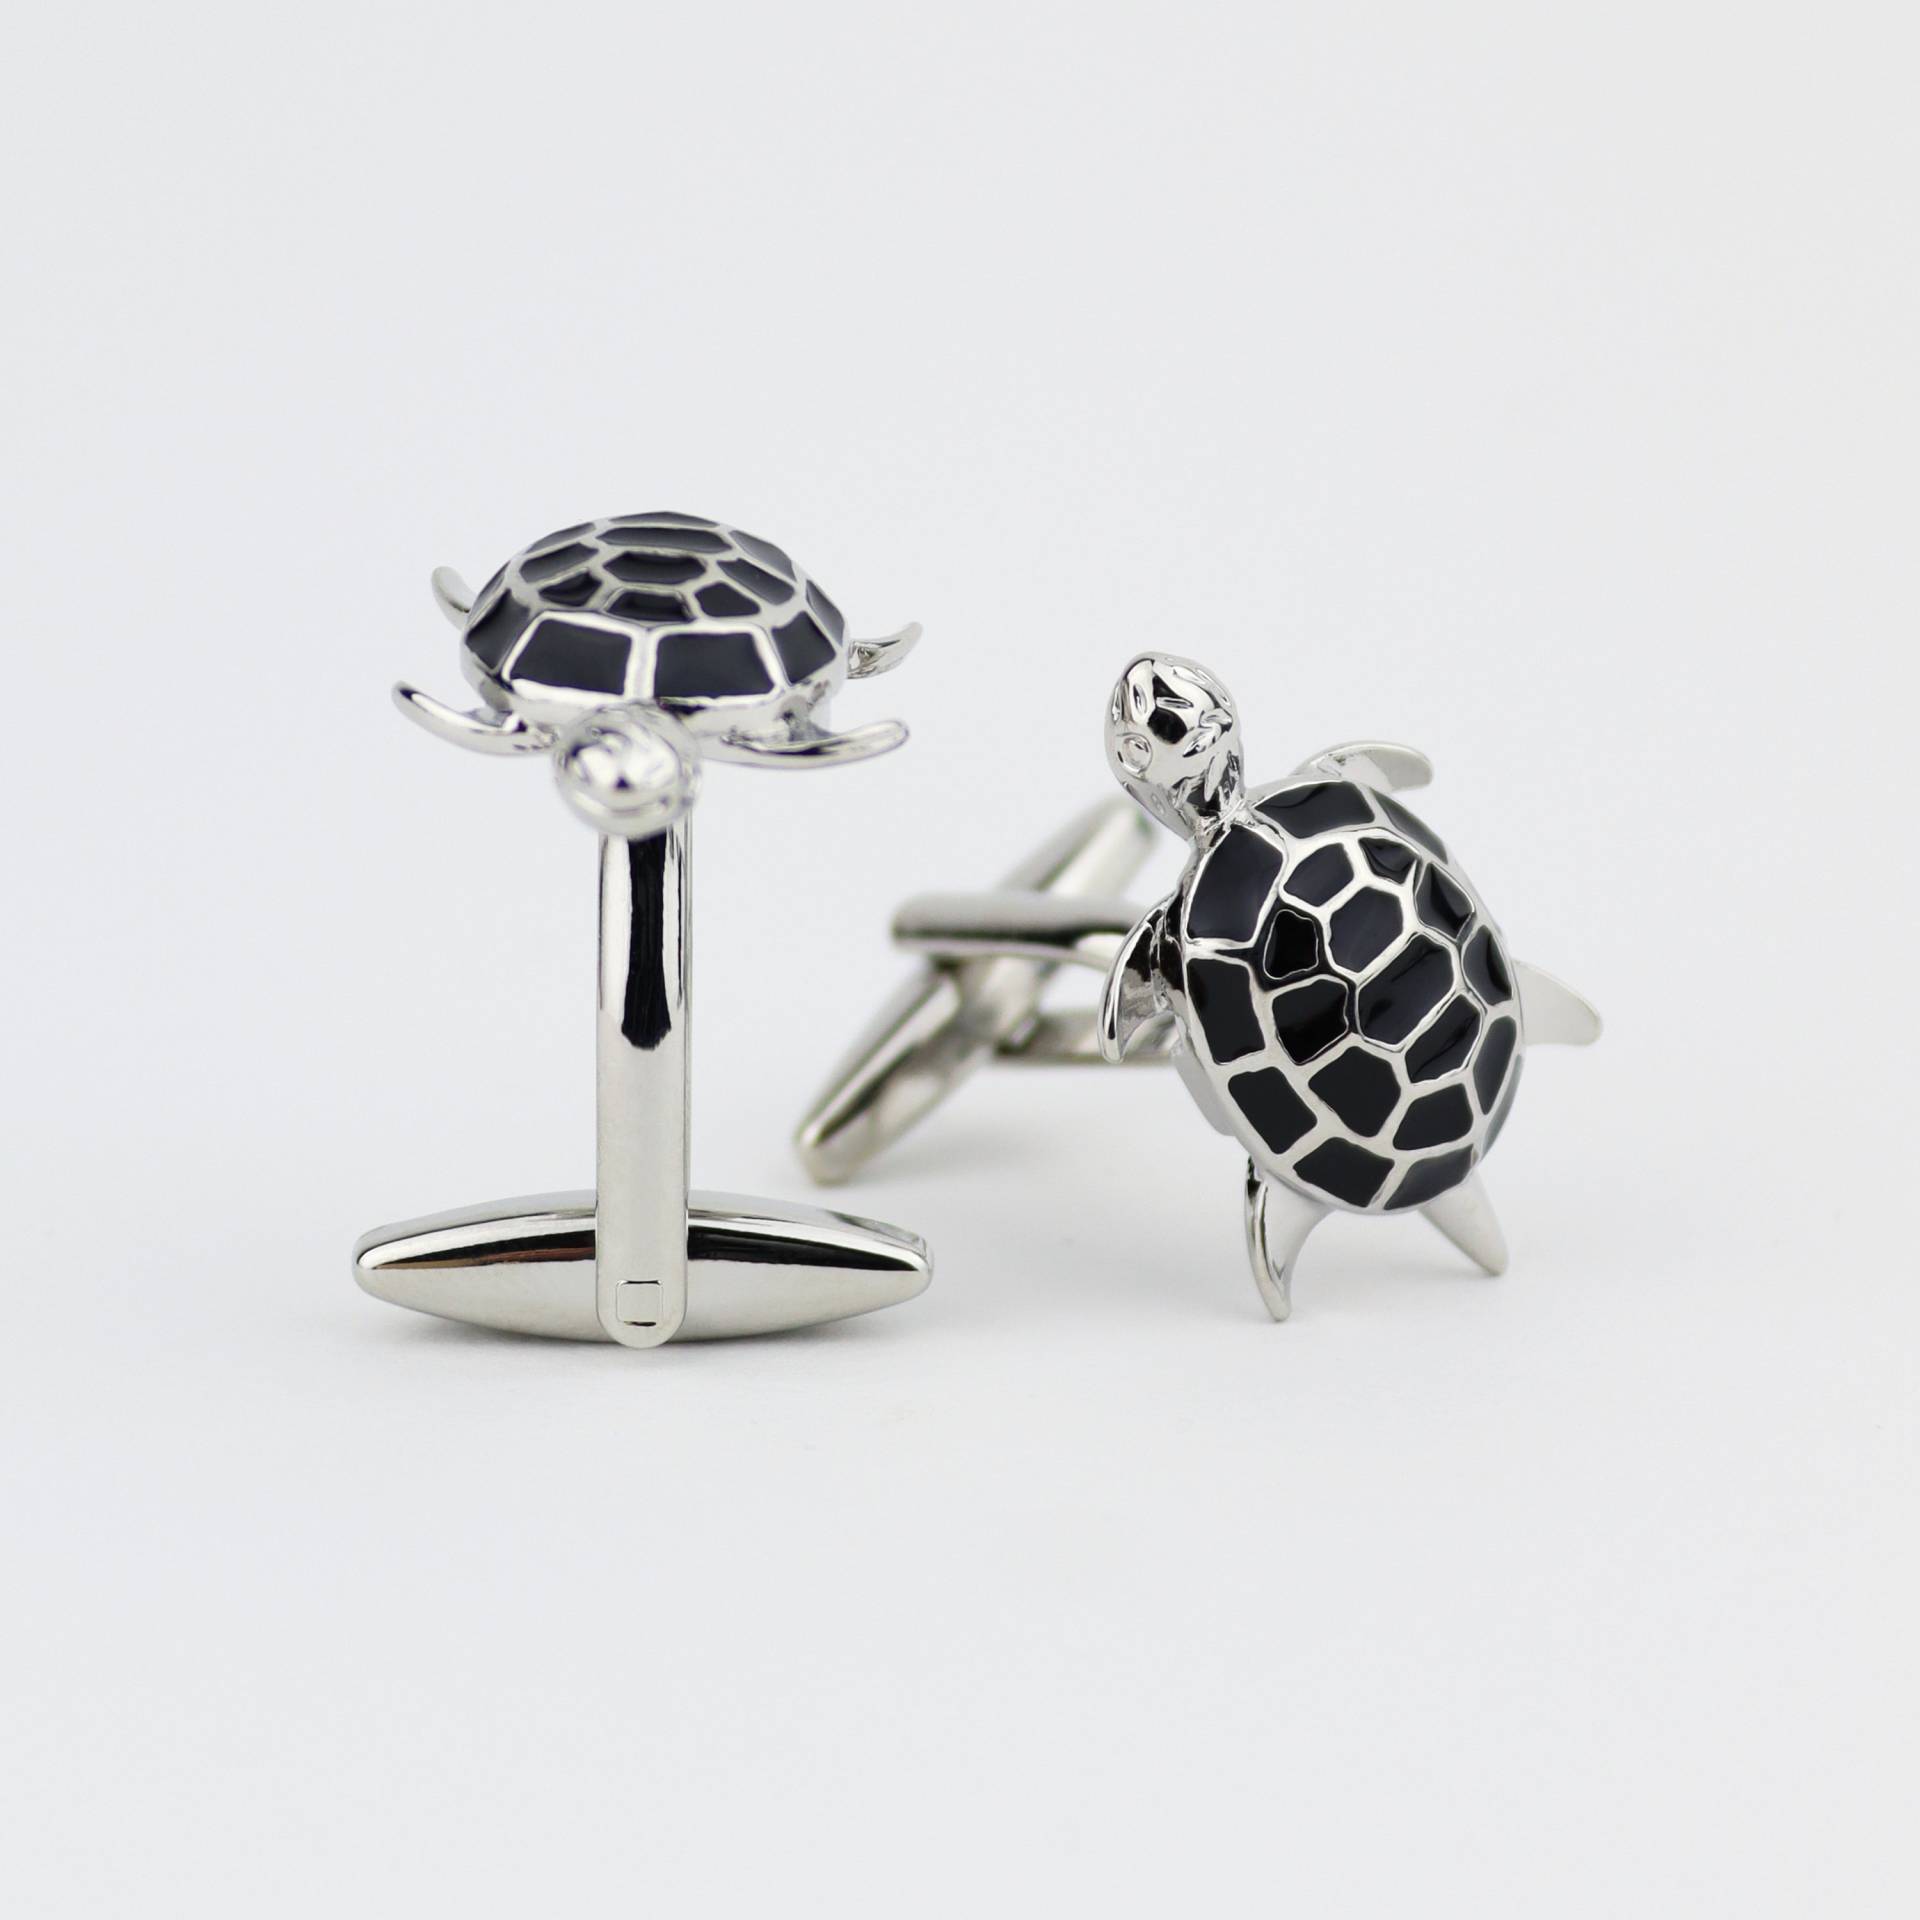 Silber & Schwarz Emaille Schildkröte Manschettenknöpfe | Geschenk Für Ihn Sie Zum Vatertag von TheGentsLab